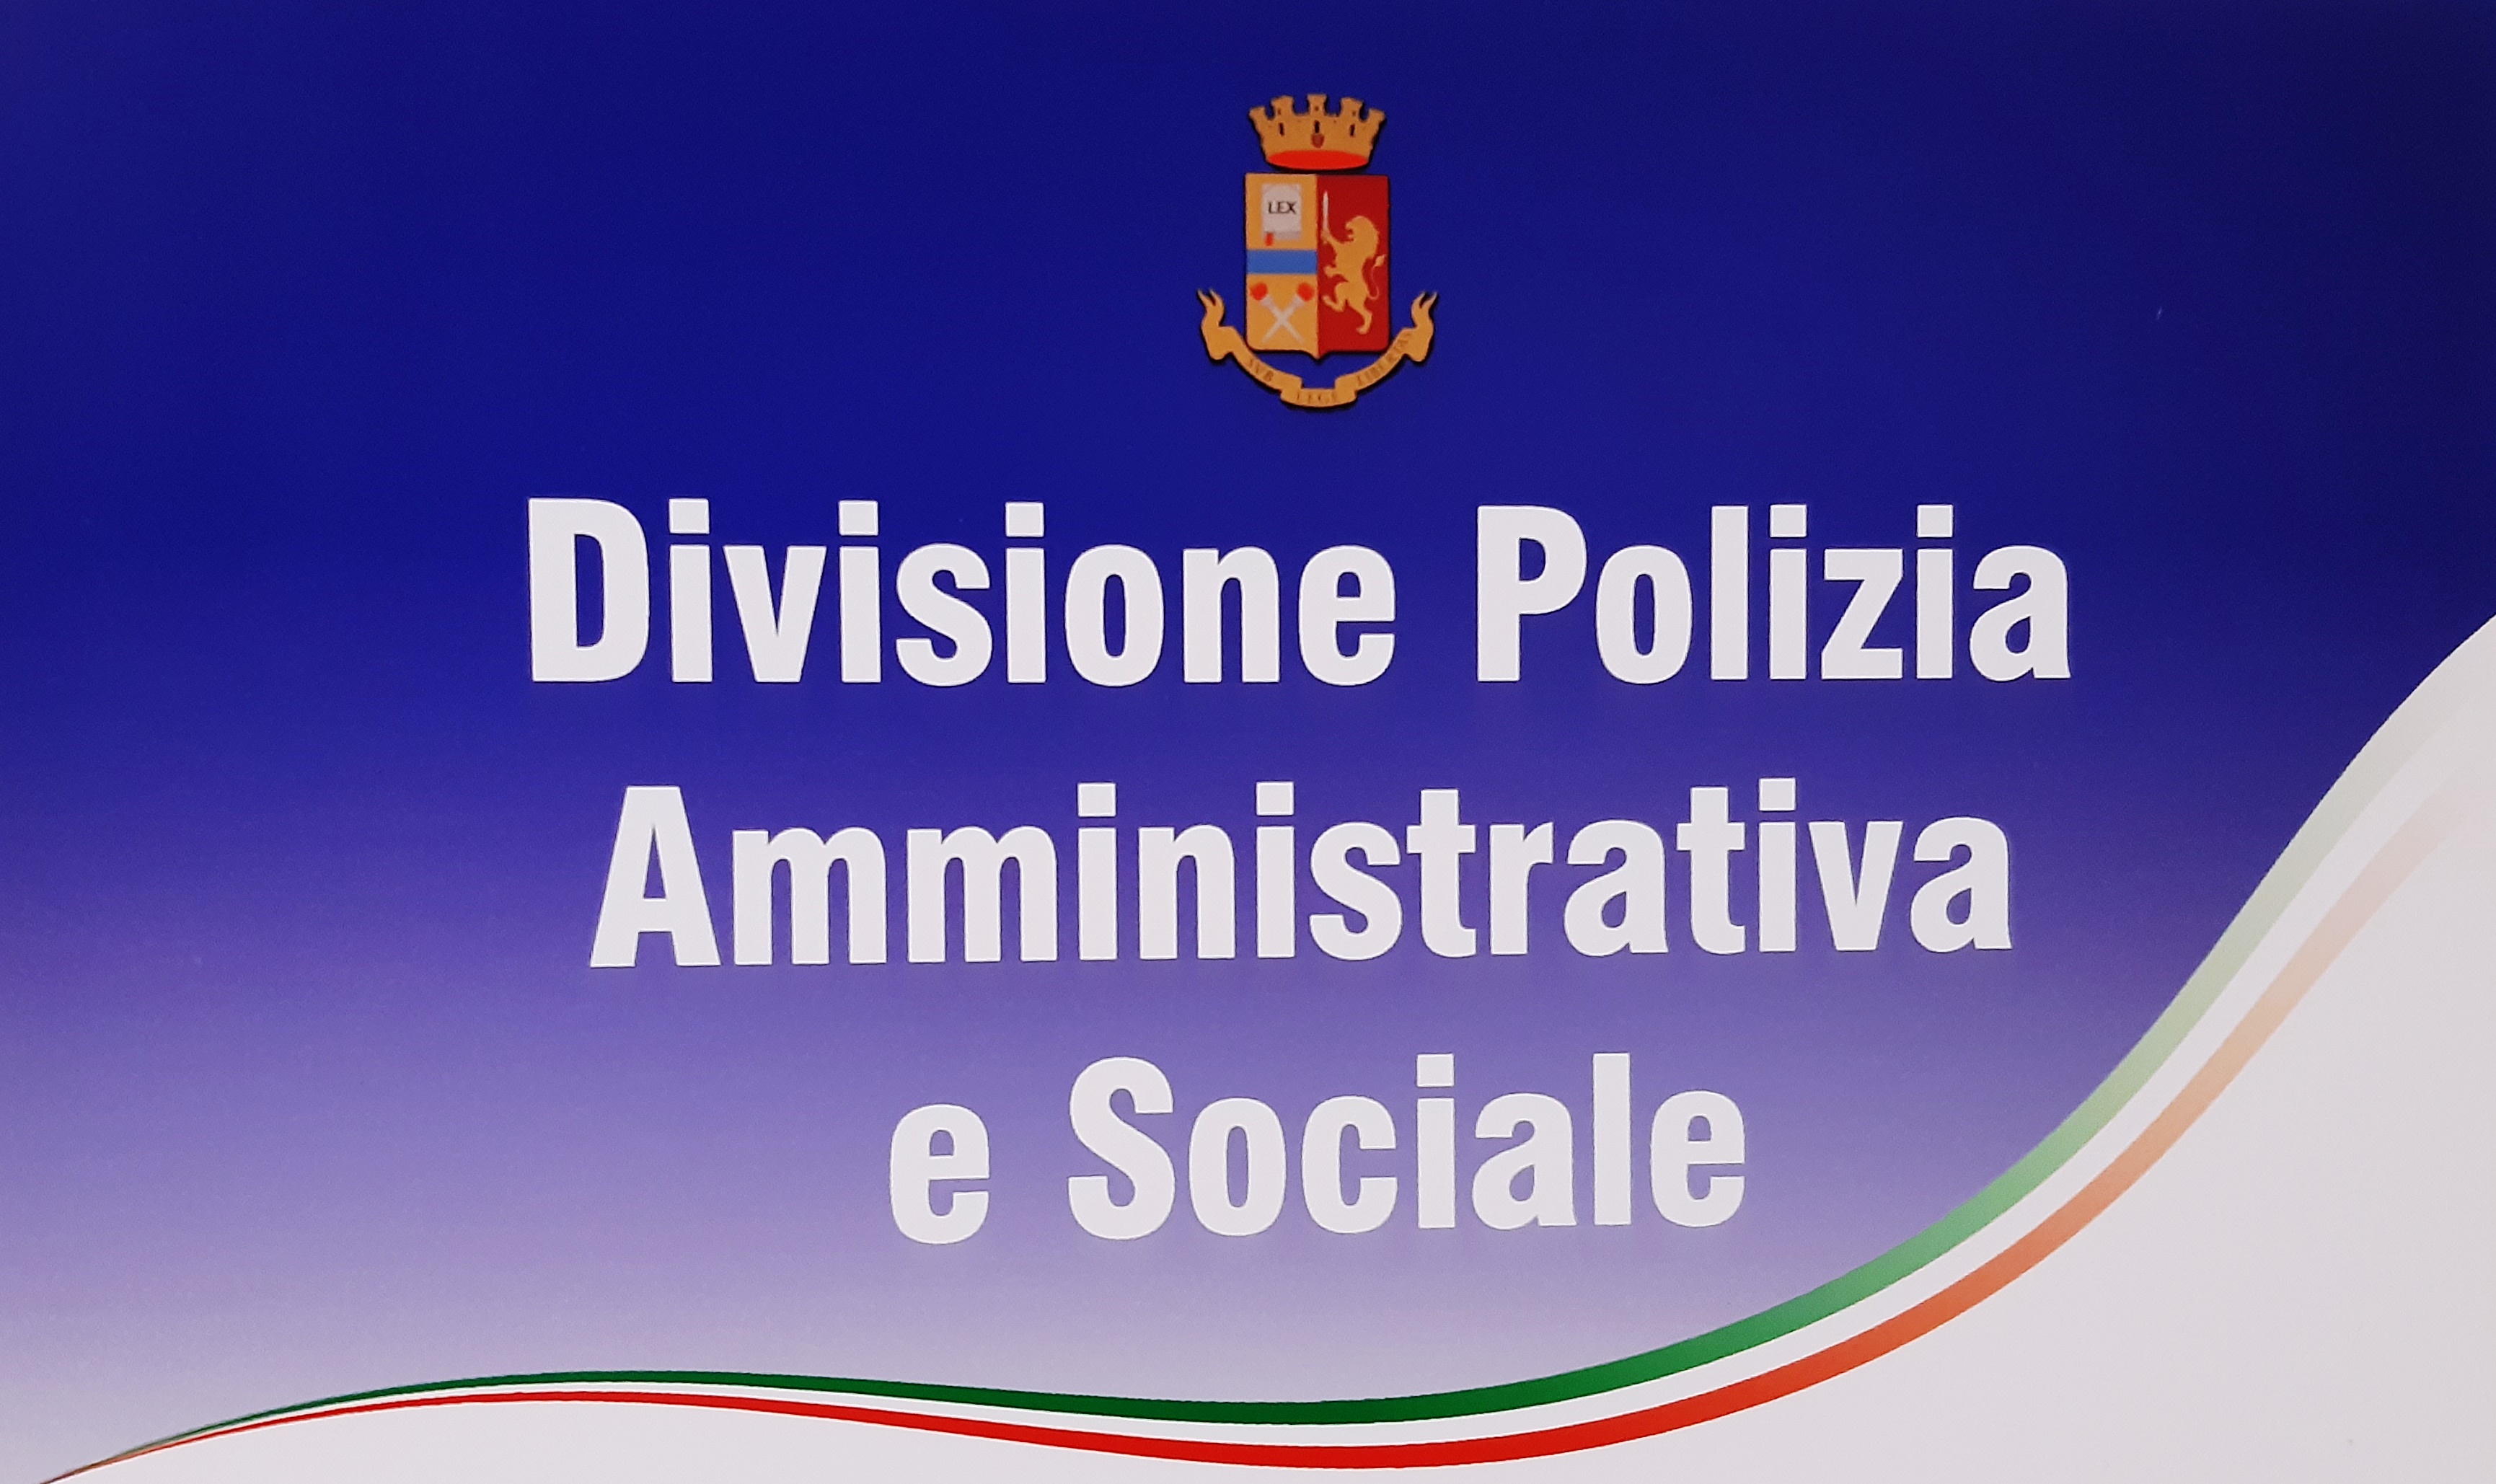 Divisione Polizia Amministrativa e Sociale. Aggiornamenti al 10 aprile 2022